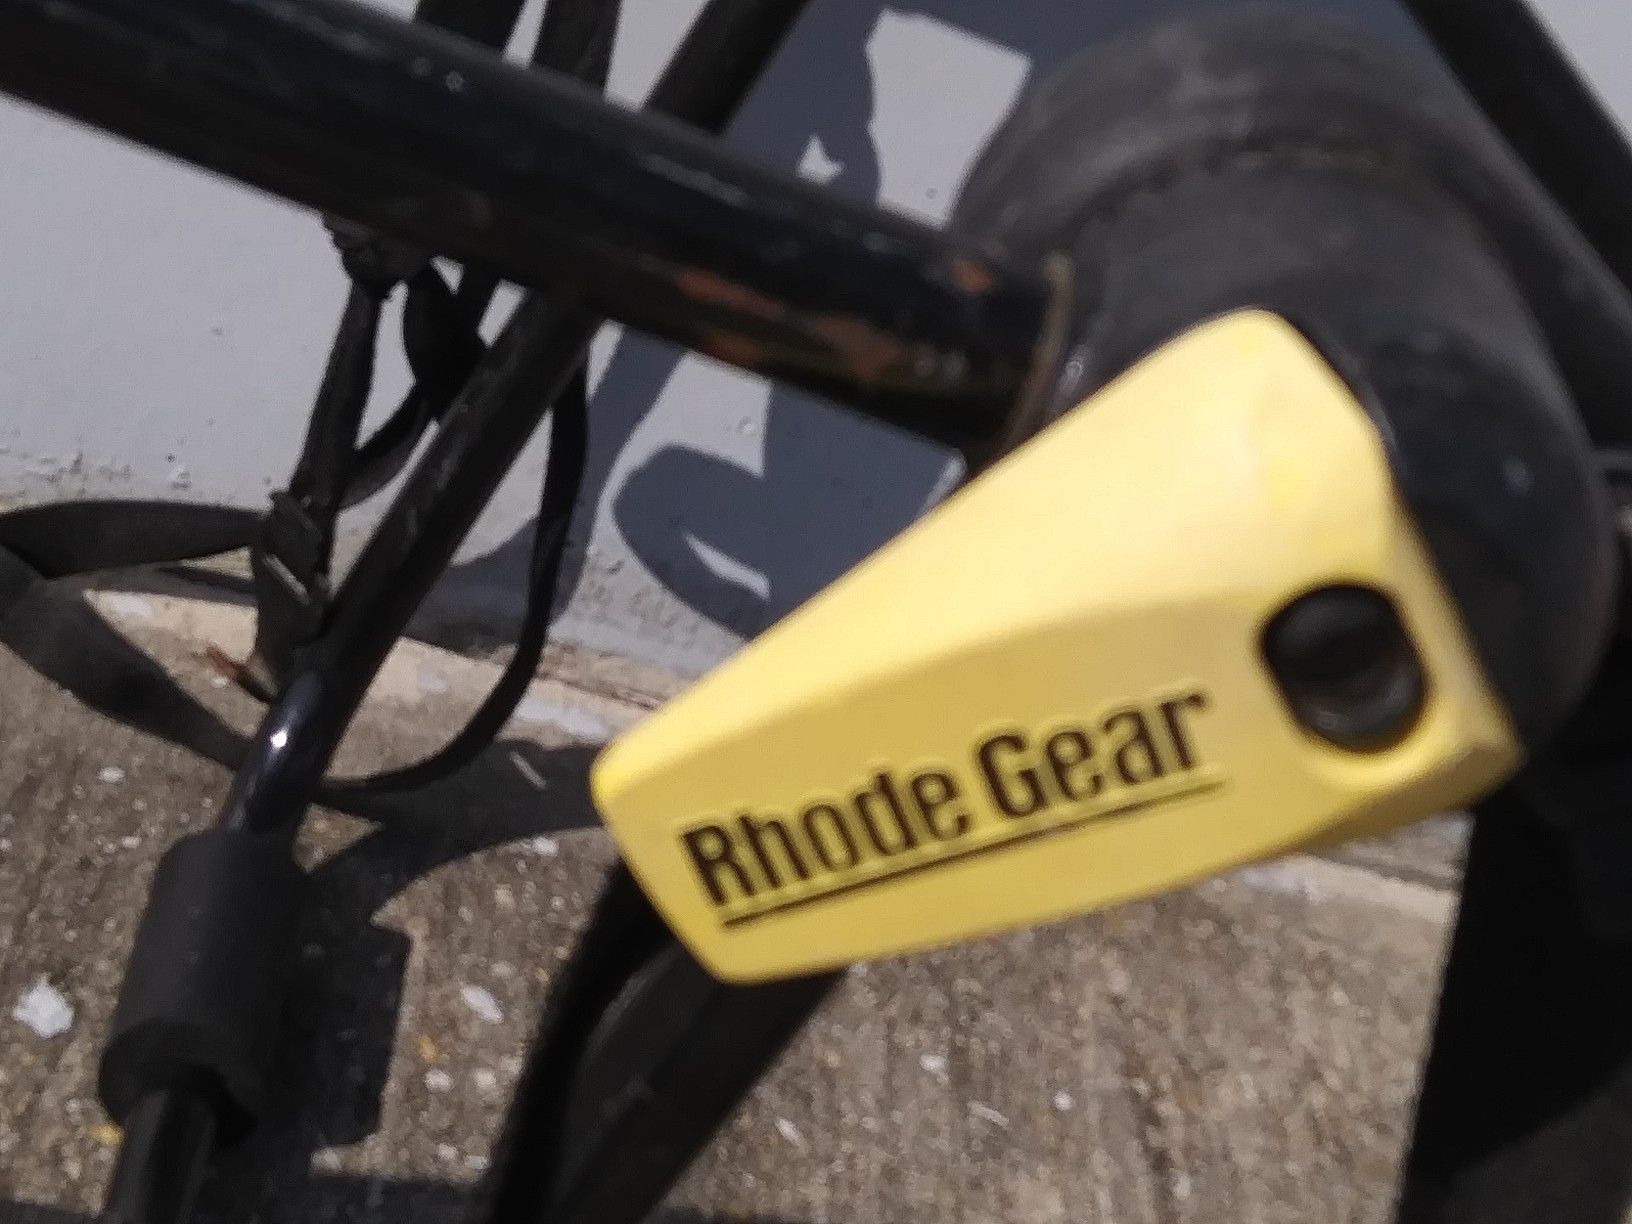 Rhode Gear foldable auto bike rack